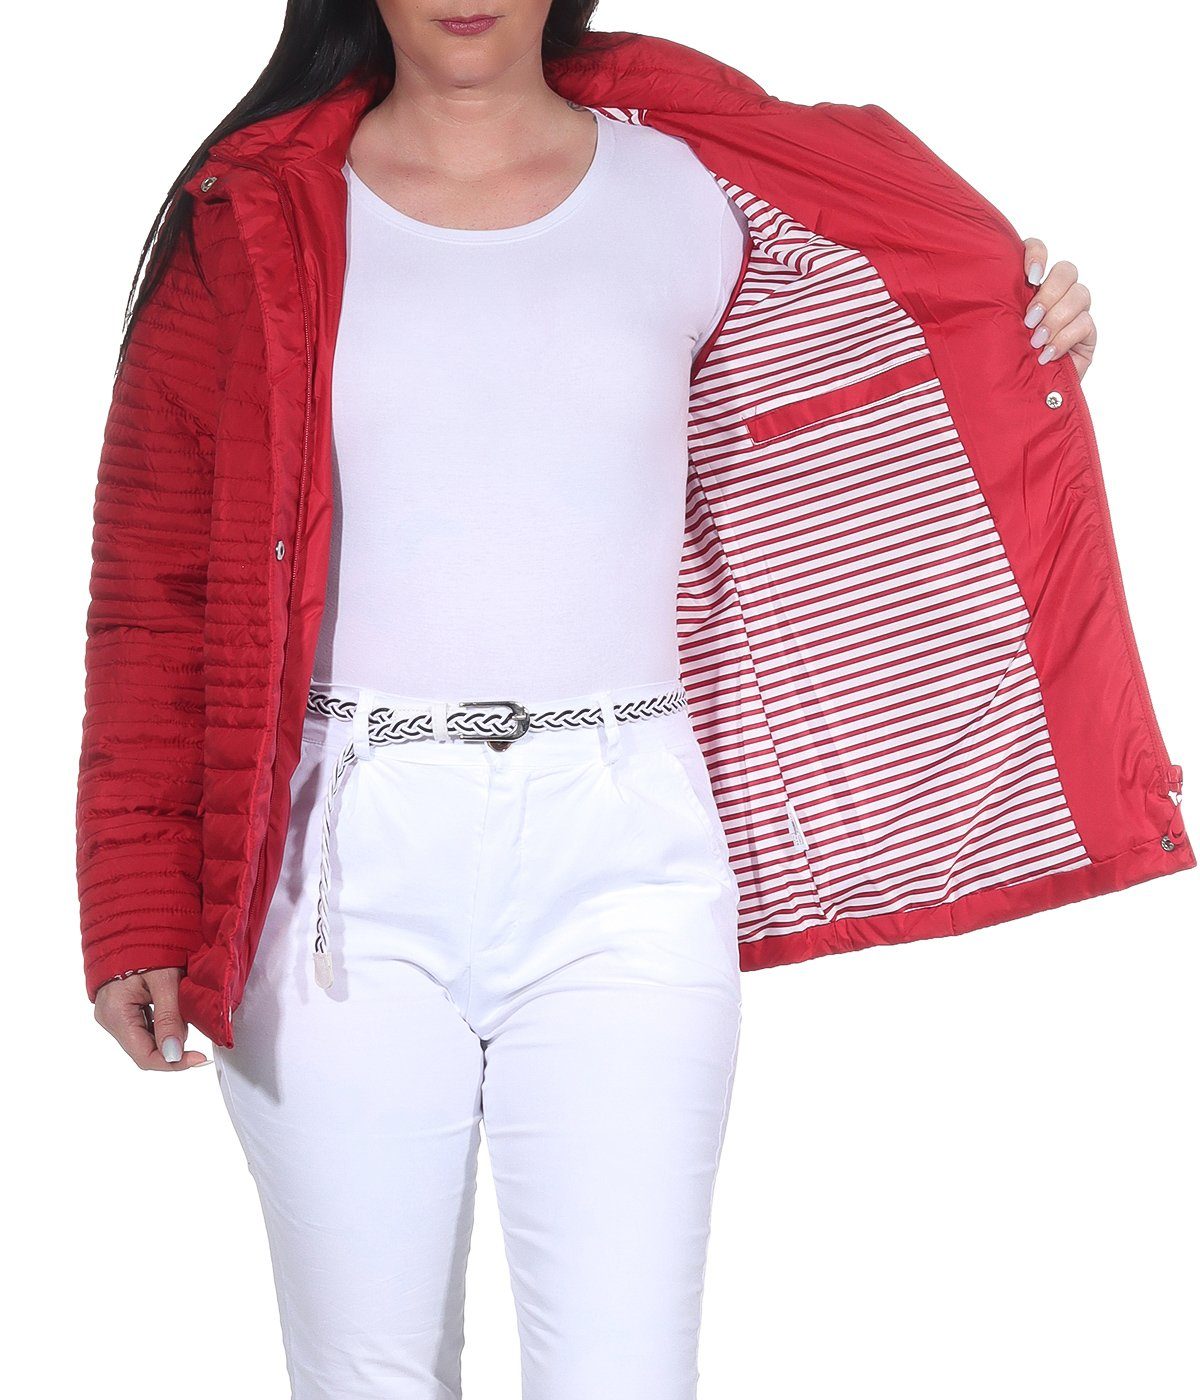 auch Übegrangsjacke Aurela Damenmode leichte Damen leichte angenehm Sommerjacke großen in Outdoor erhältlich, Jacke Steppjacke Größen Rot